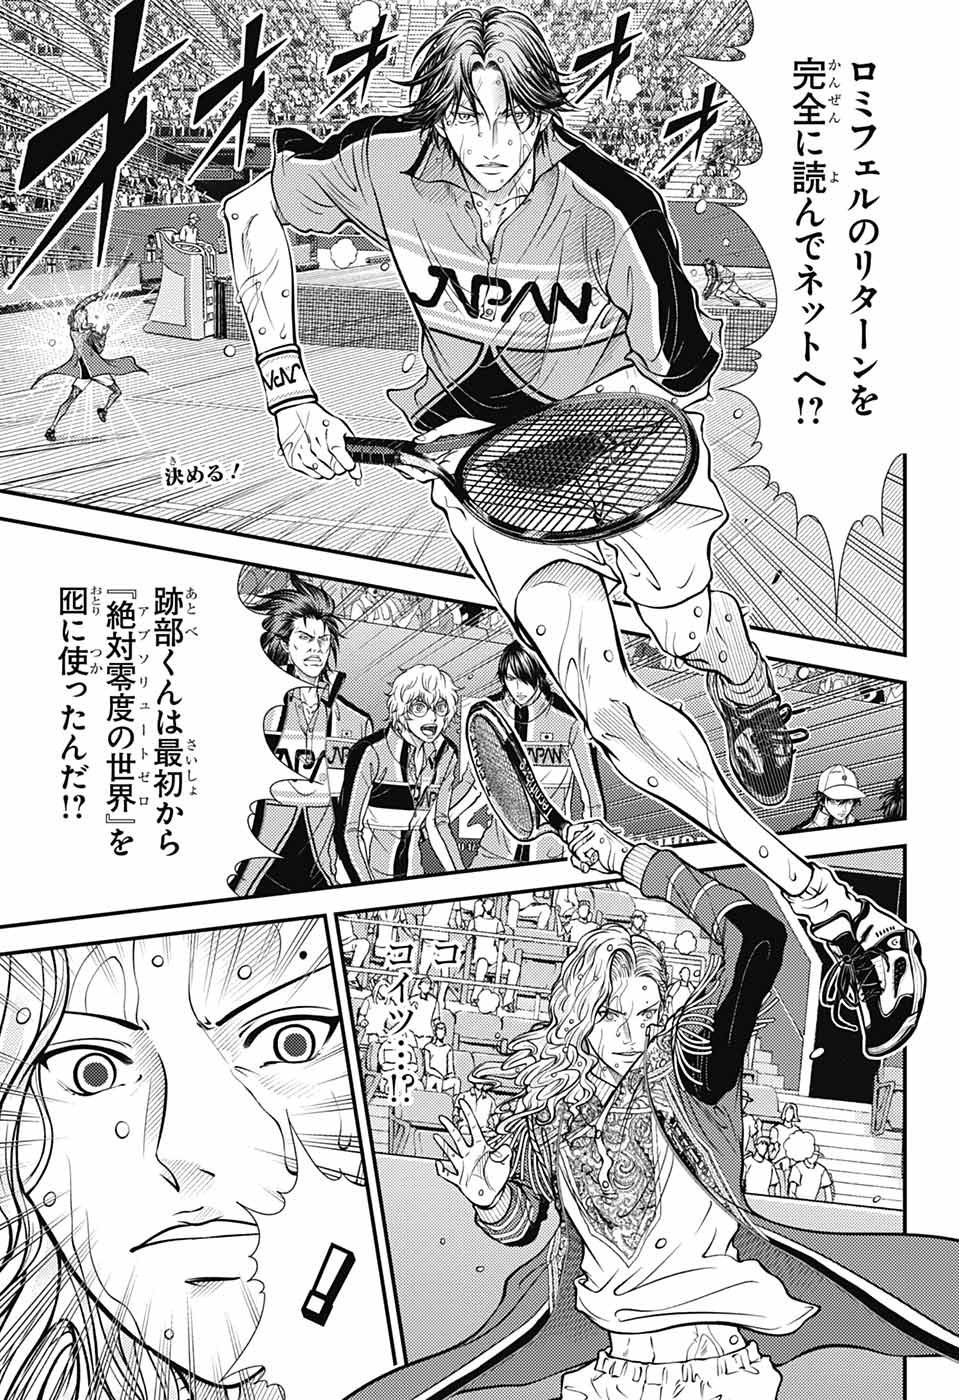 Shin Prince of Tennis - Chapter 404 - Page 1 - Raw Manga 生漫画